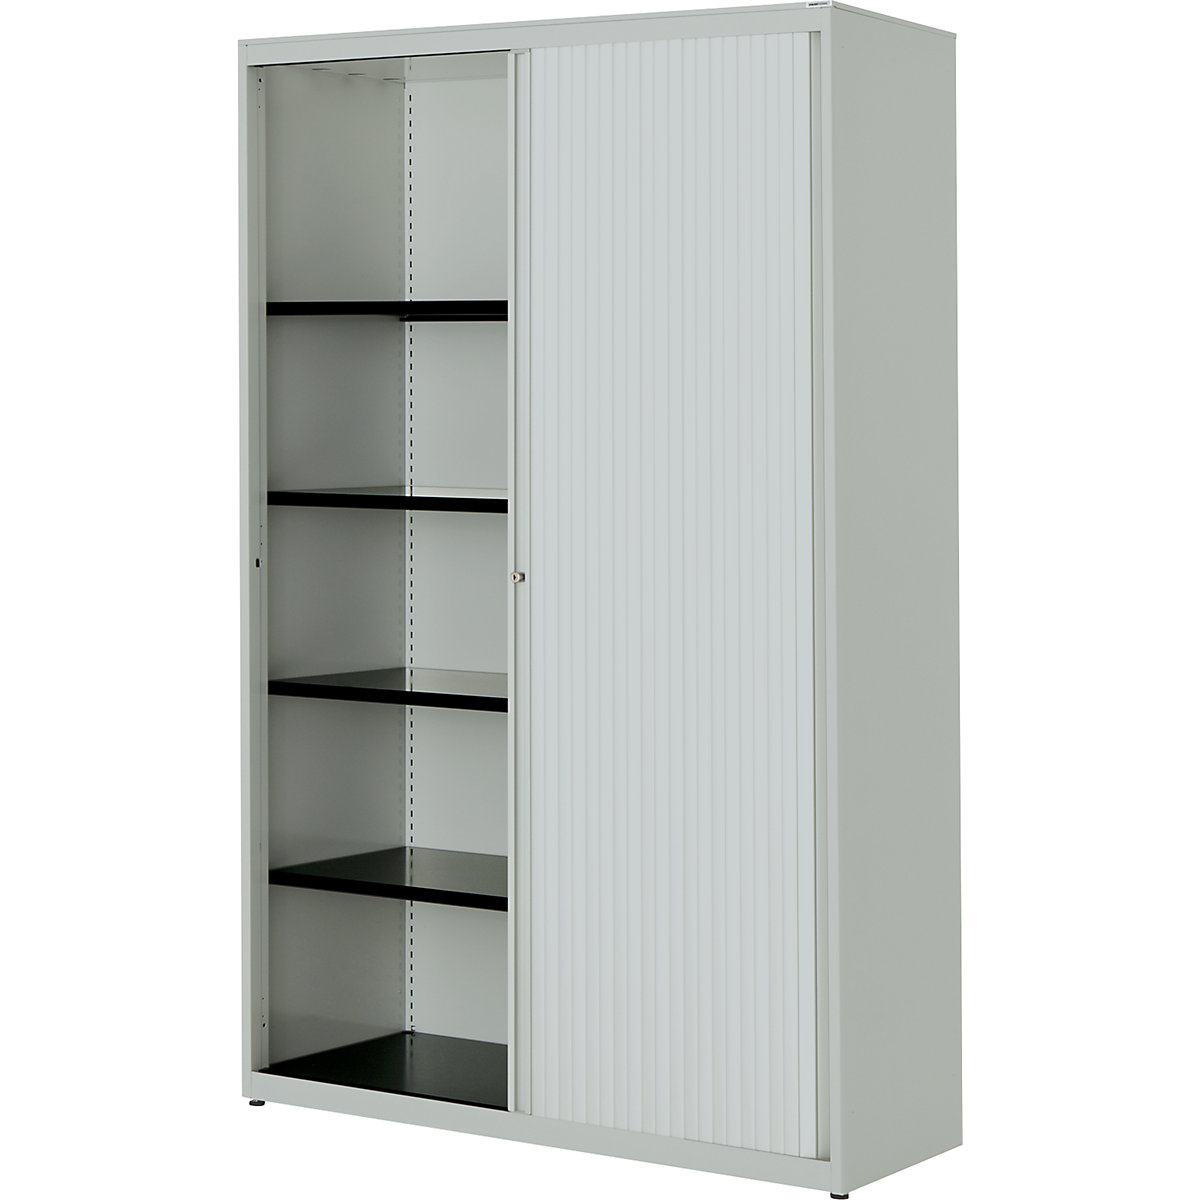 Horizontal roller shutter cupboard – mauser, HxWxD 1956 x 1200 x 432 mm, steel plate, 4 shelves, light grey / light grey / light grey-3